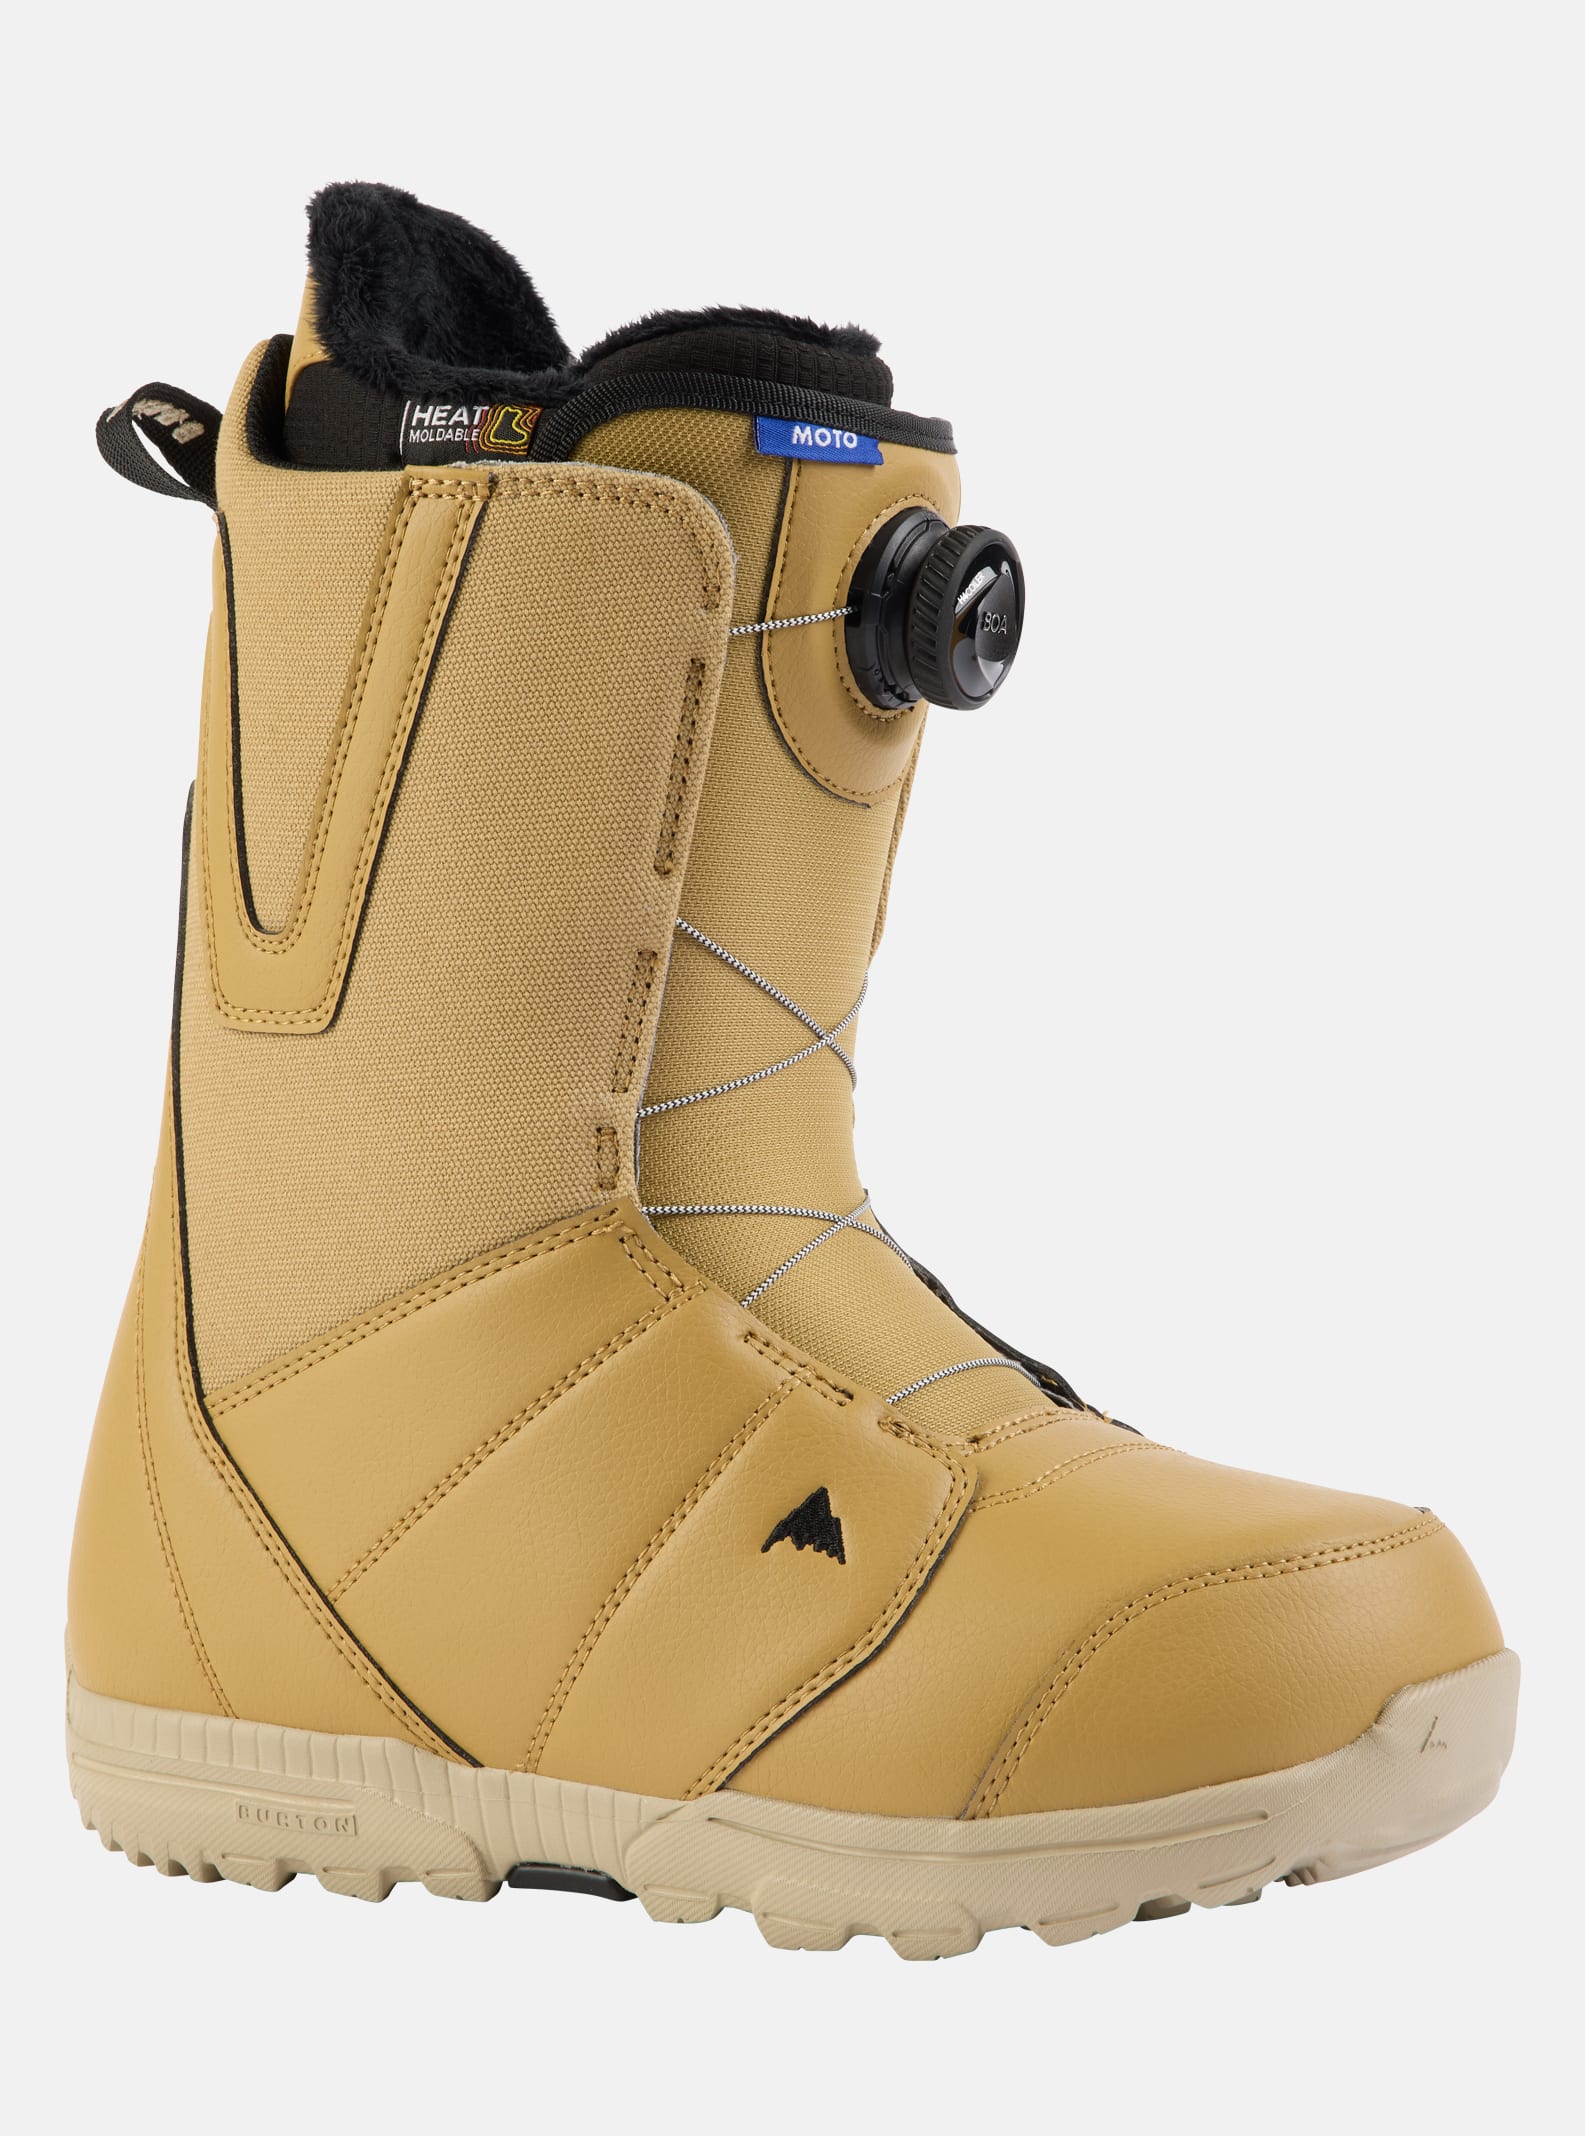 Men's Burton Moto BOA® Snowboard Boots (Wide)